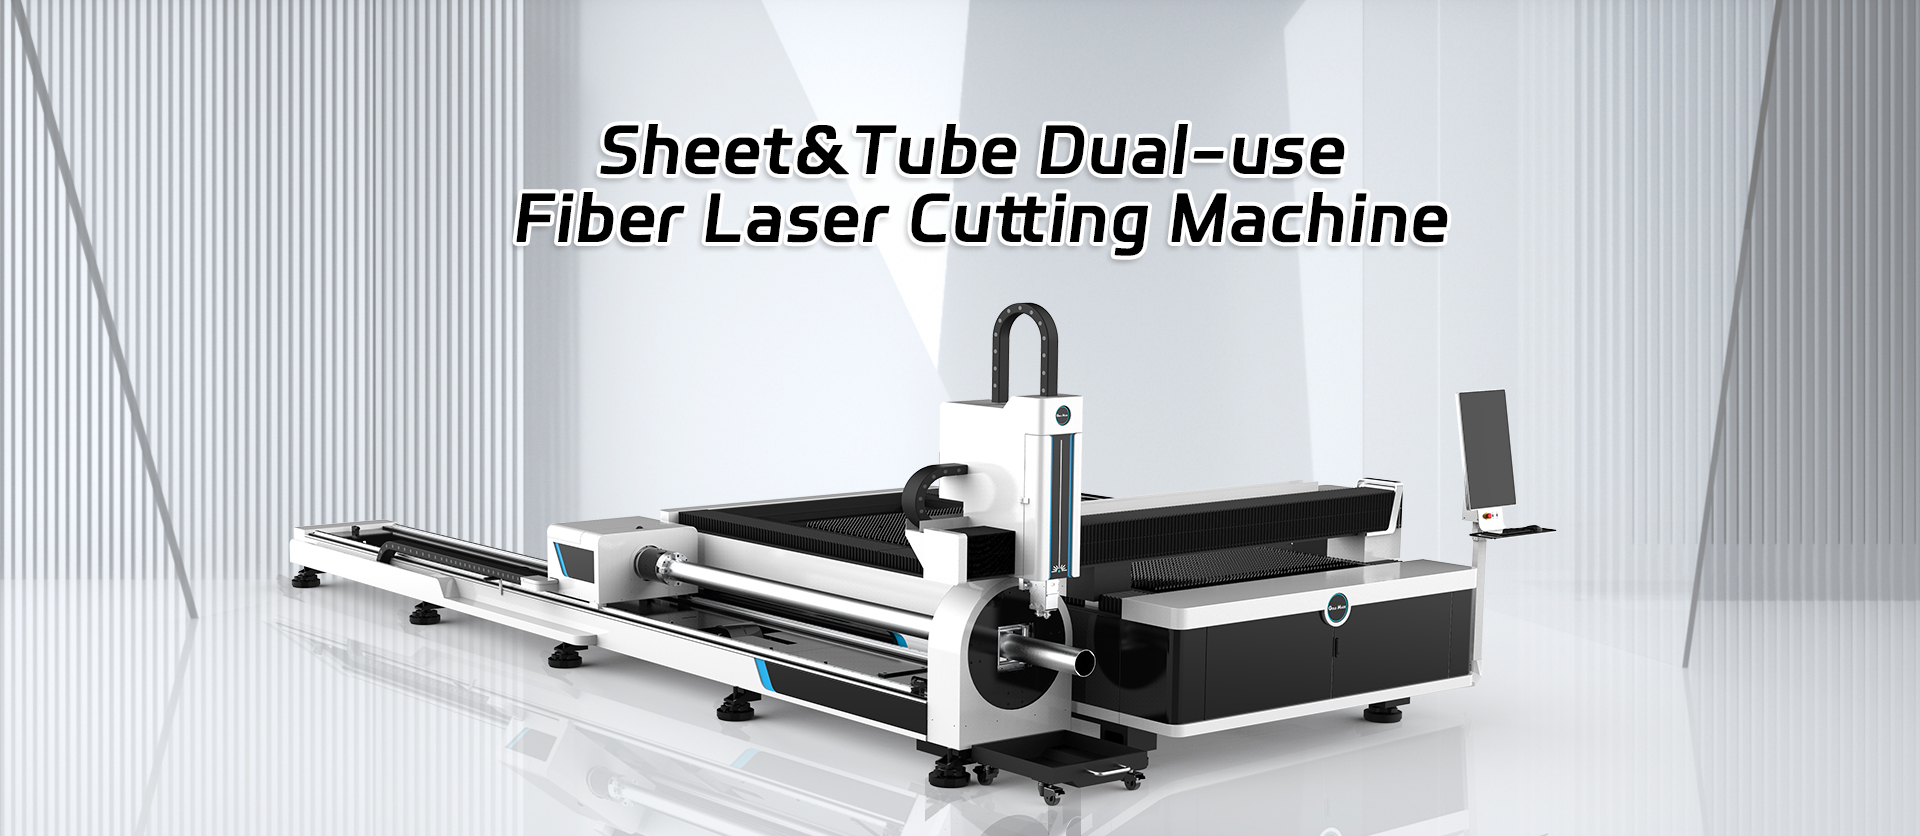 Sheet&Tube Dual-пайдалануу була лазер кесүүчү машина